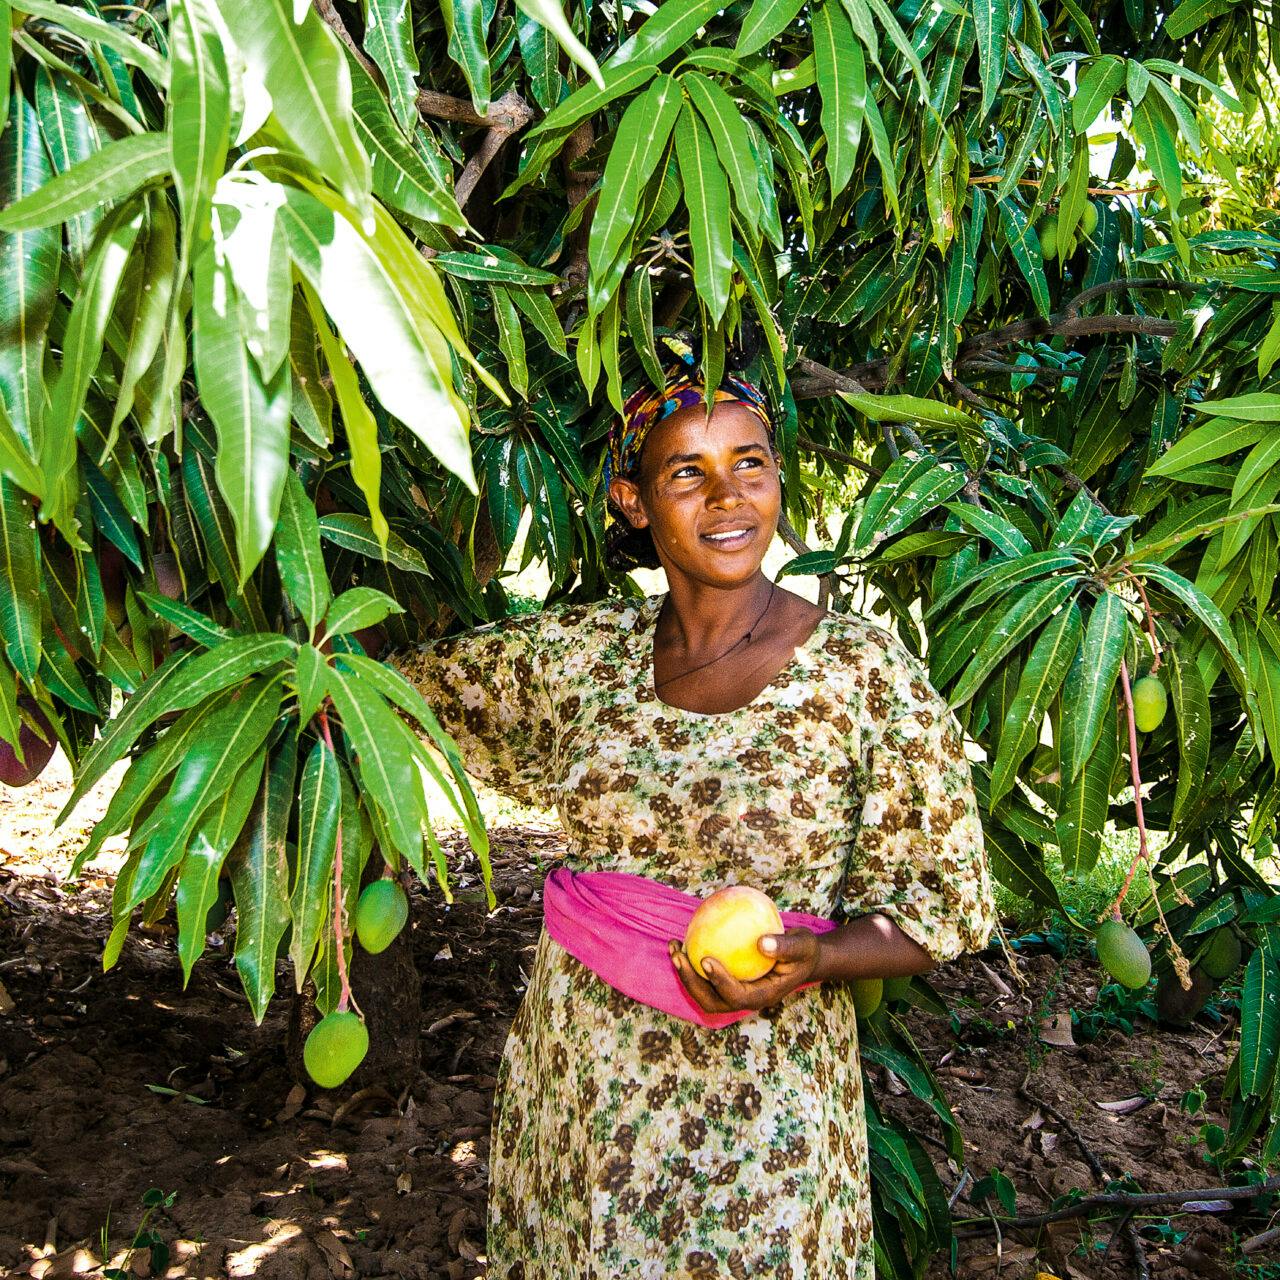 Odlaren Haregwa Gobegay har lyckats förvandla en stenig ravin i norra Etiopien till en ekologisk fruktträdgård med nära 7 000 mangoträd. Hon är en av de etiopiska småbrukare som tillsammans med vår samarbetsorganisation, Institute for Sustainable Development (ISD), lyckats vända utvecklingen i området. https://www.naturskyddsforeningen.se/nyheter/fran-stenig-ravin-till-ekologisk-frukttradgard